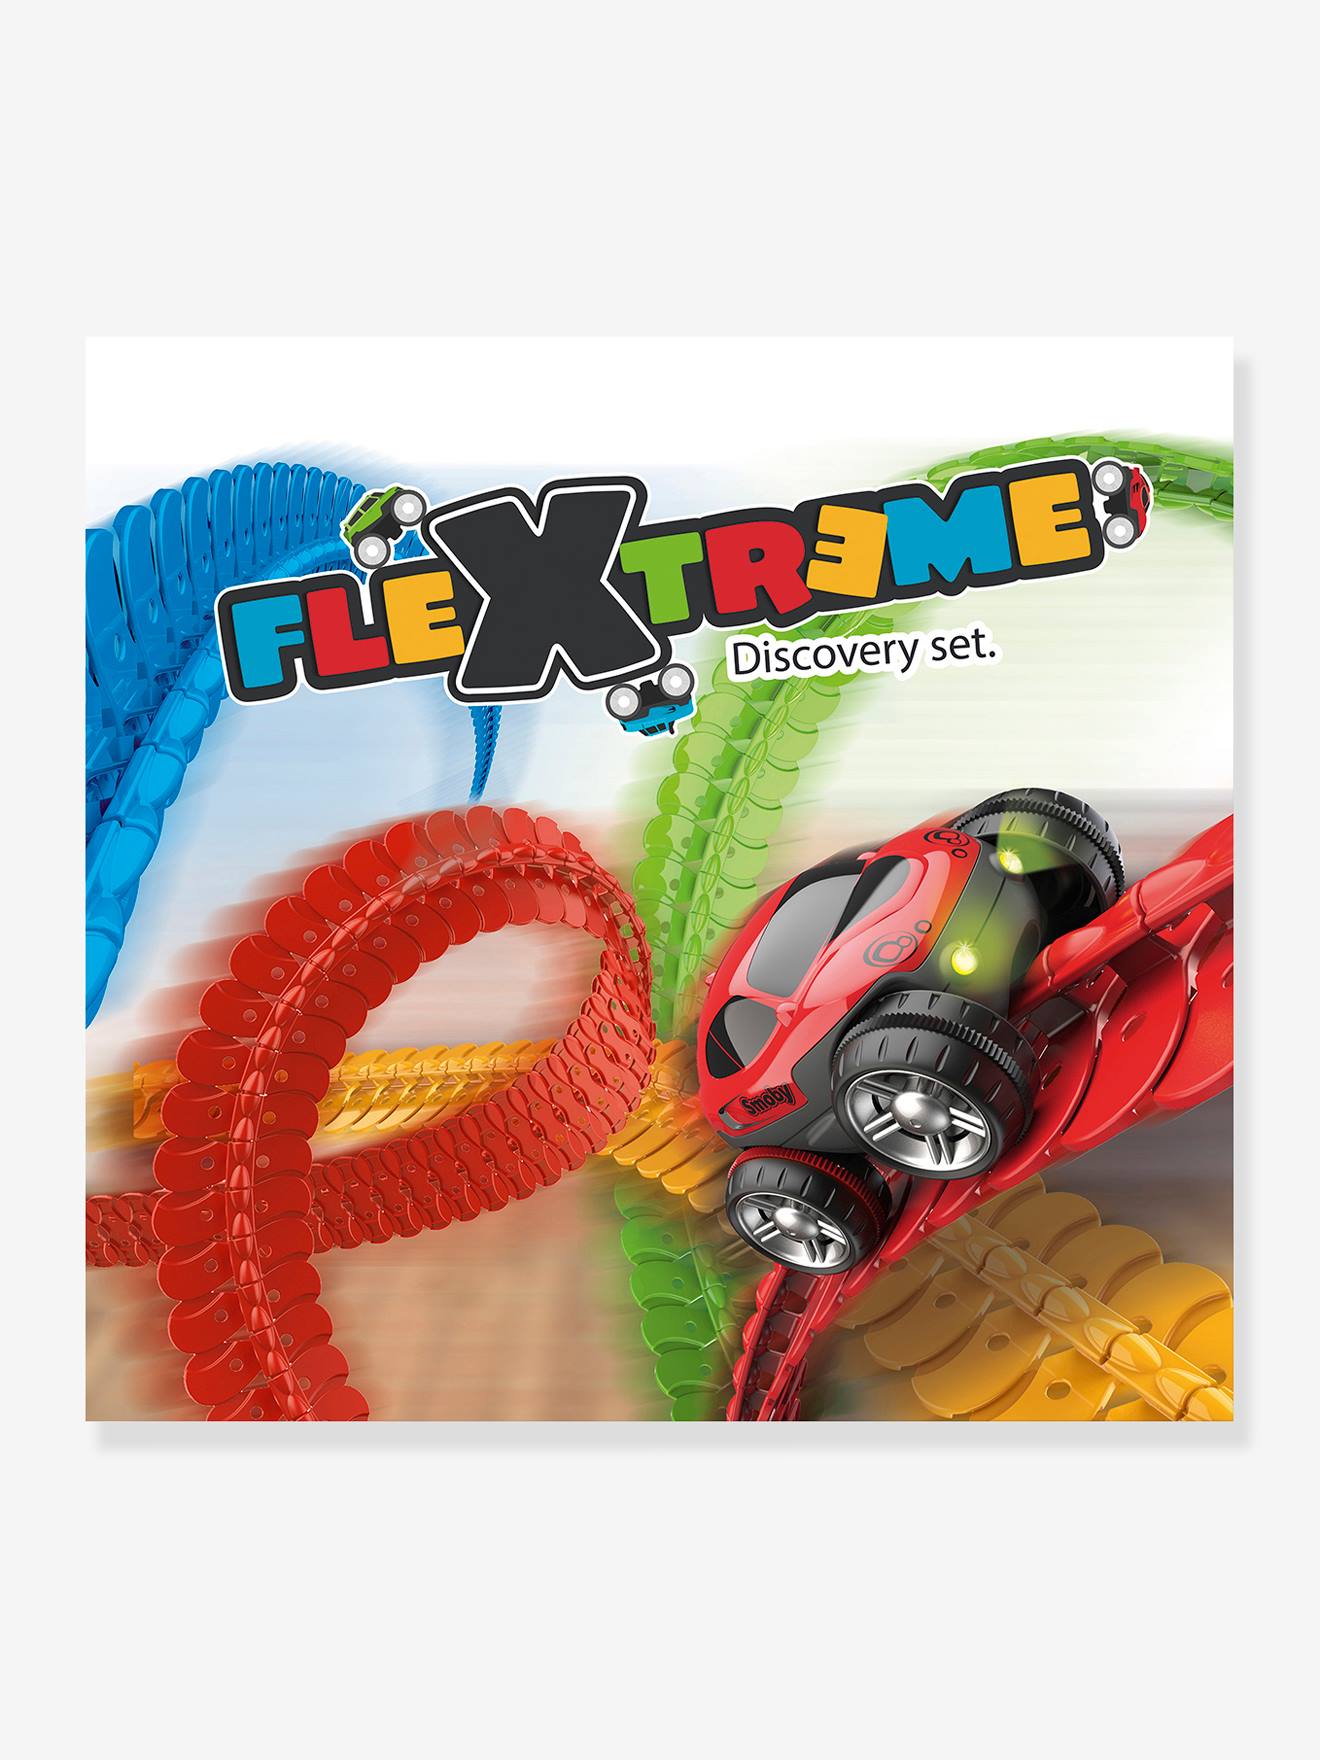 FleXtreme set découverte SMOBY multicolore